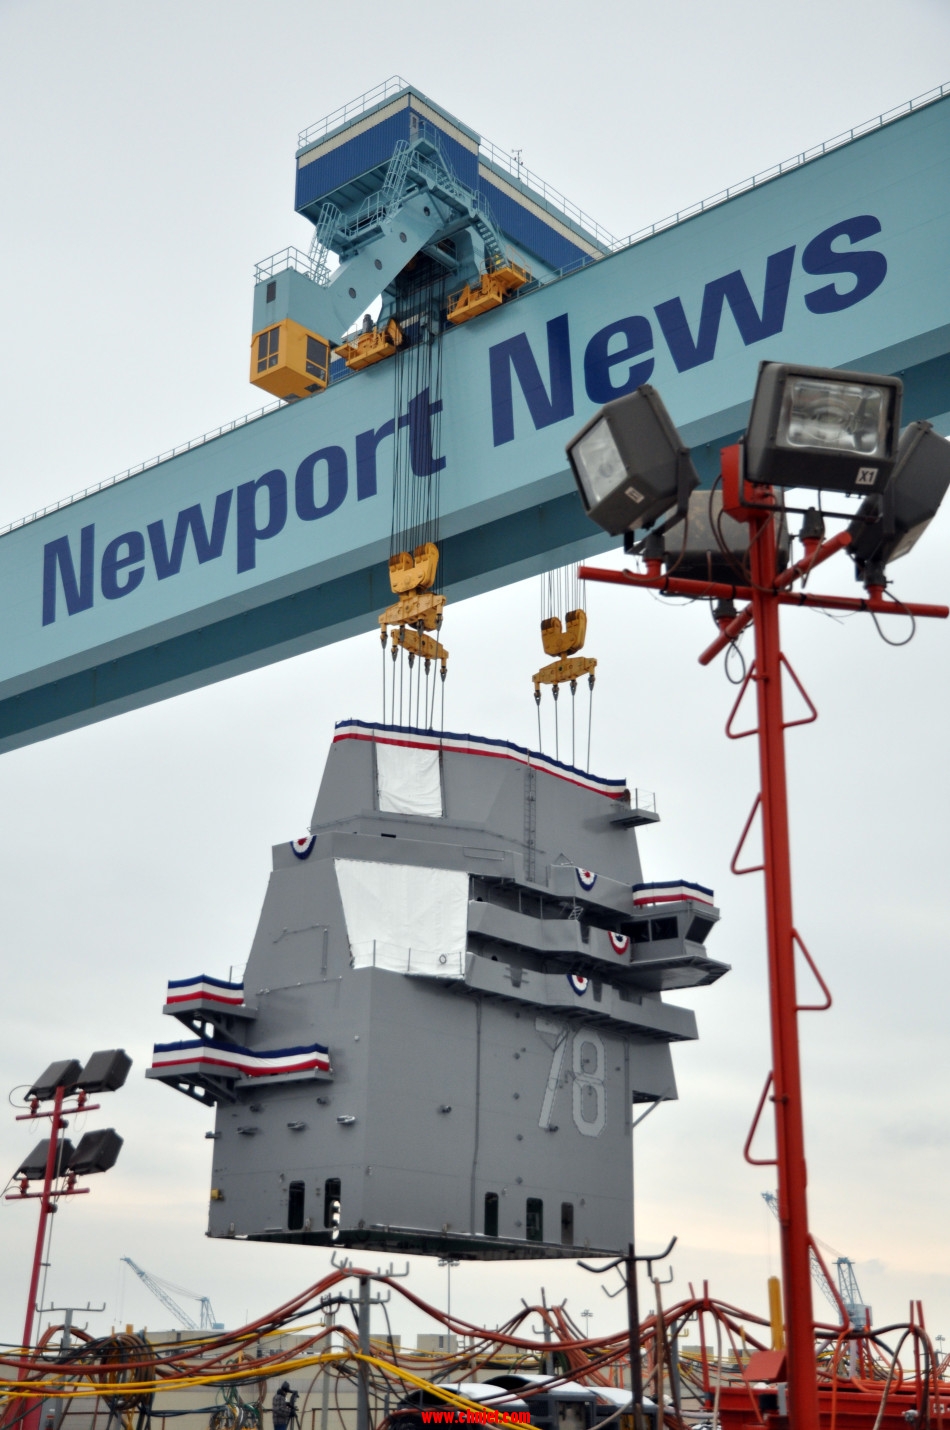 美国海军最新一代福特号核航母舰岛安装完毕